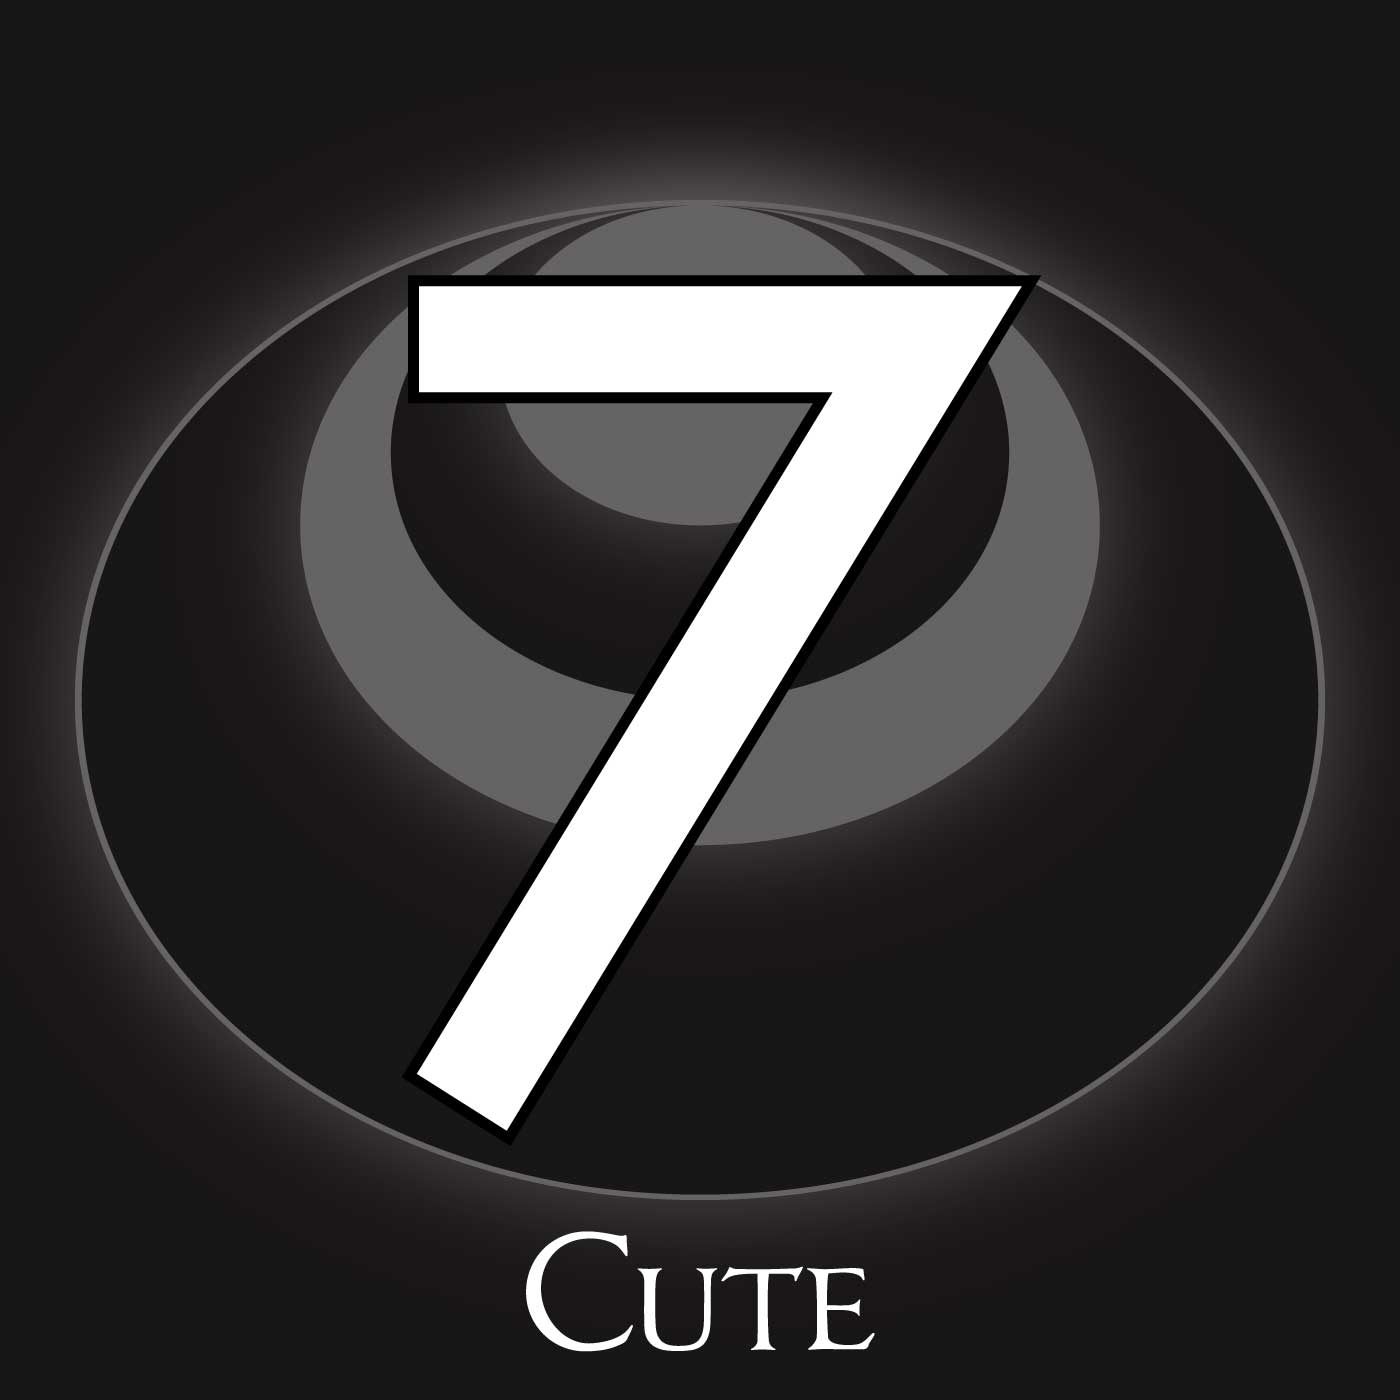 7 – Cute